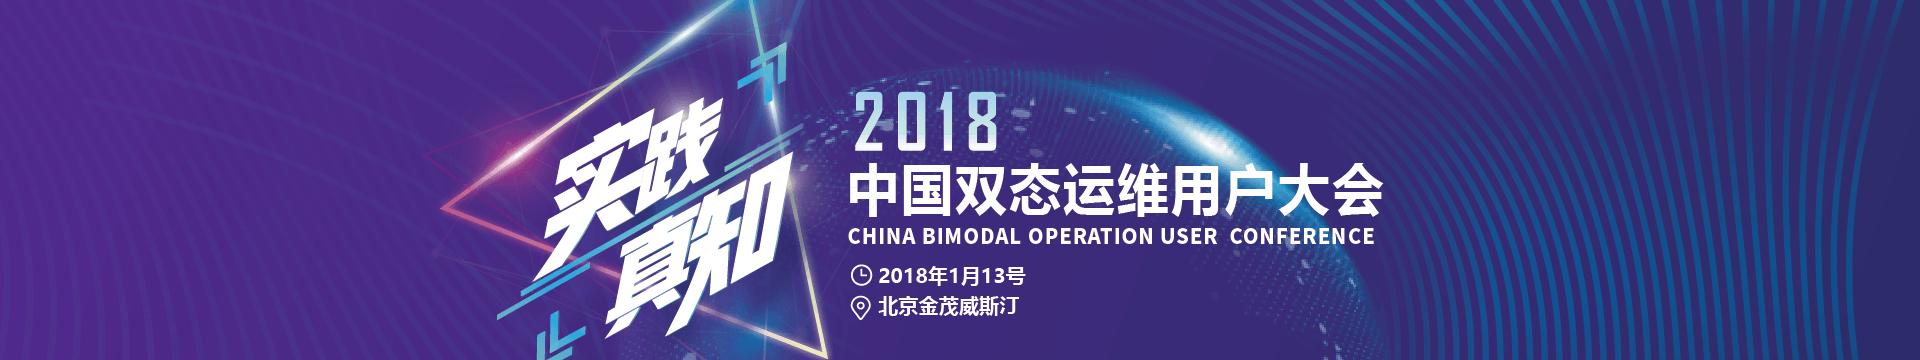 2018中国双态运维用户大会